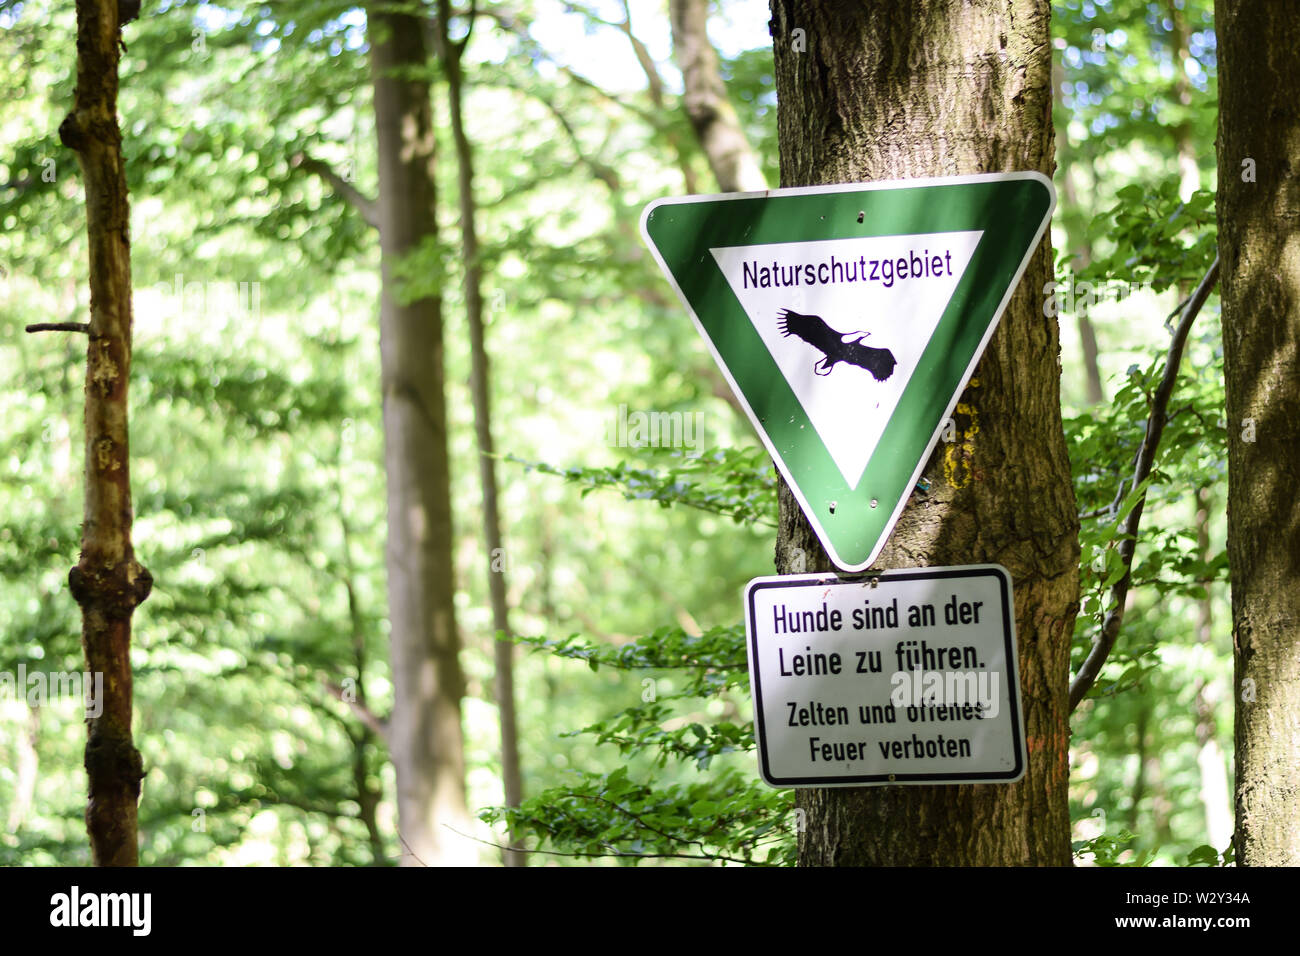 Segno tedesco dicendo Naturschutzgebiet (significato inglese: riserva naturale) per il paesaggio protetto - Hinweisschild Foto Stock